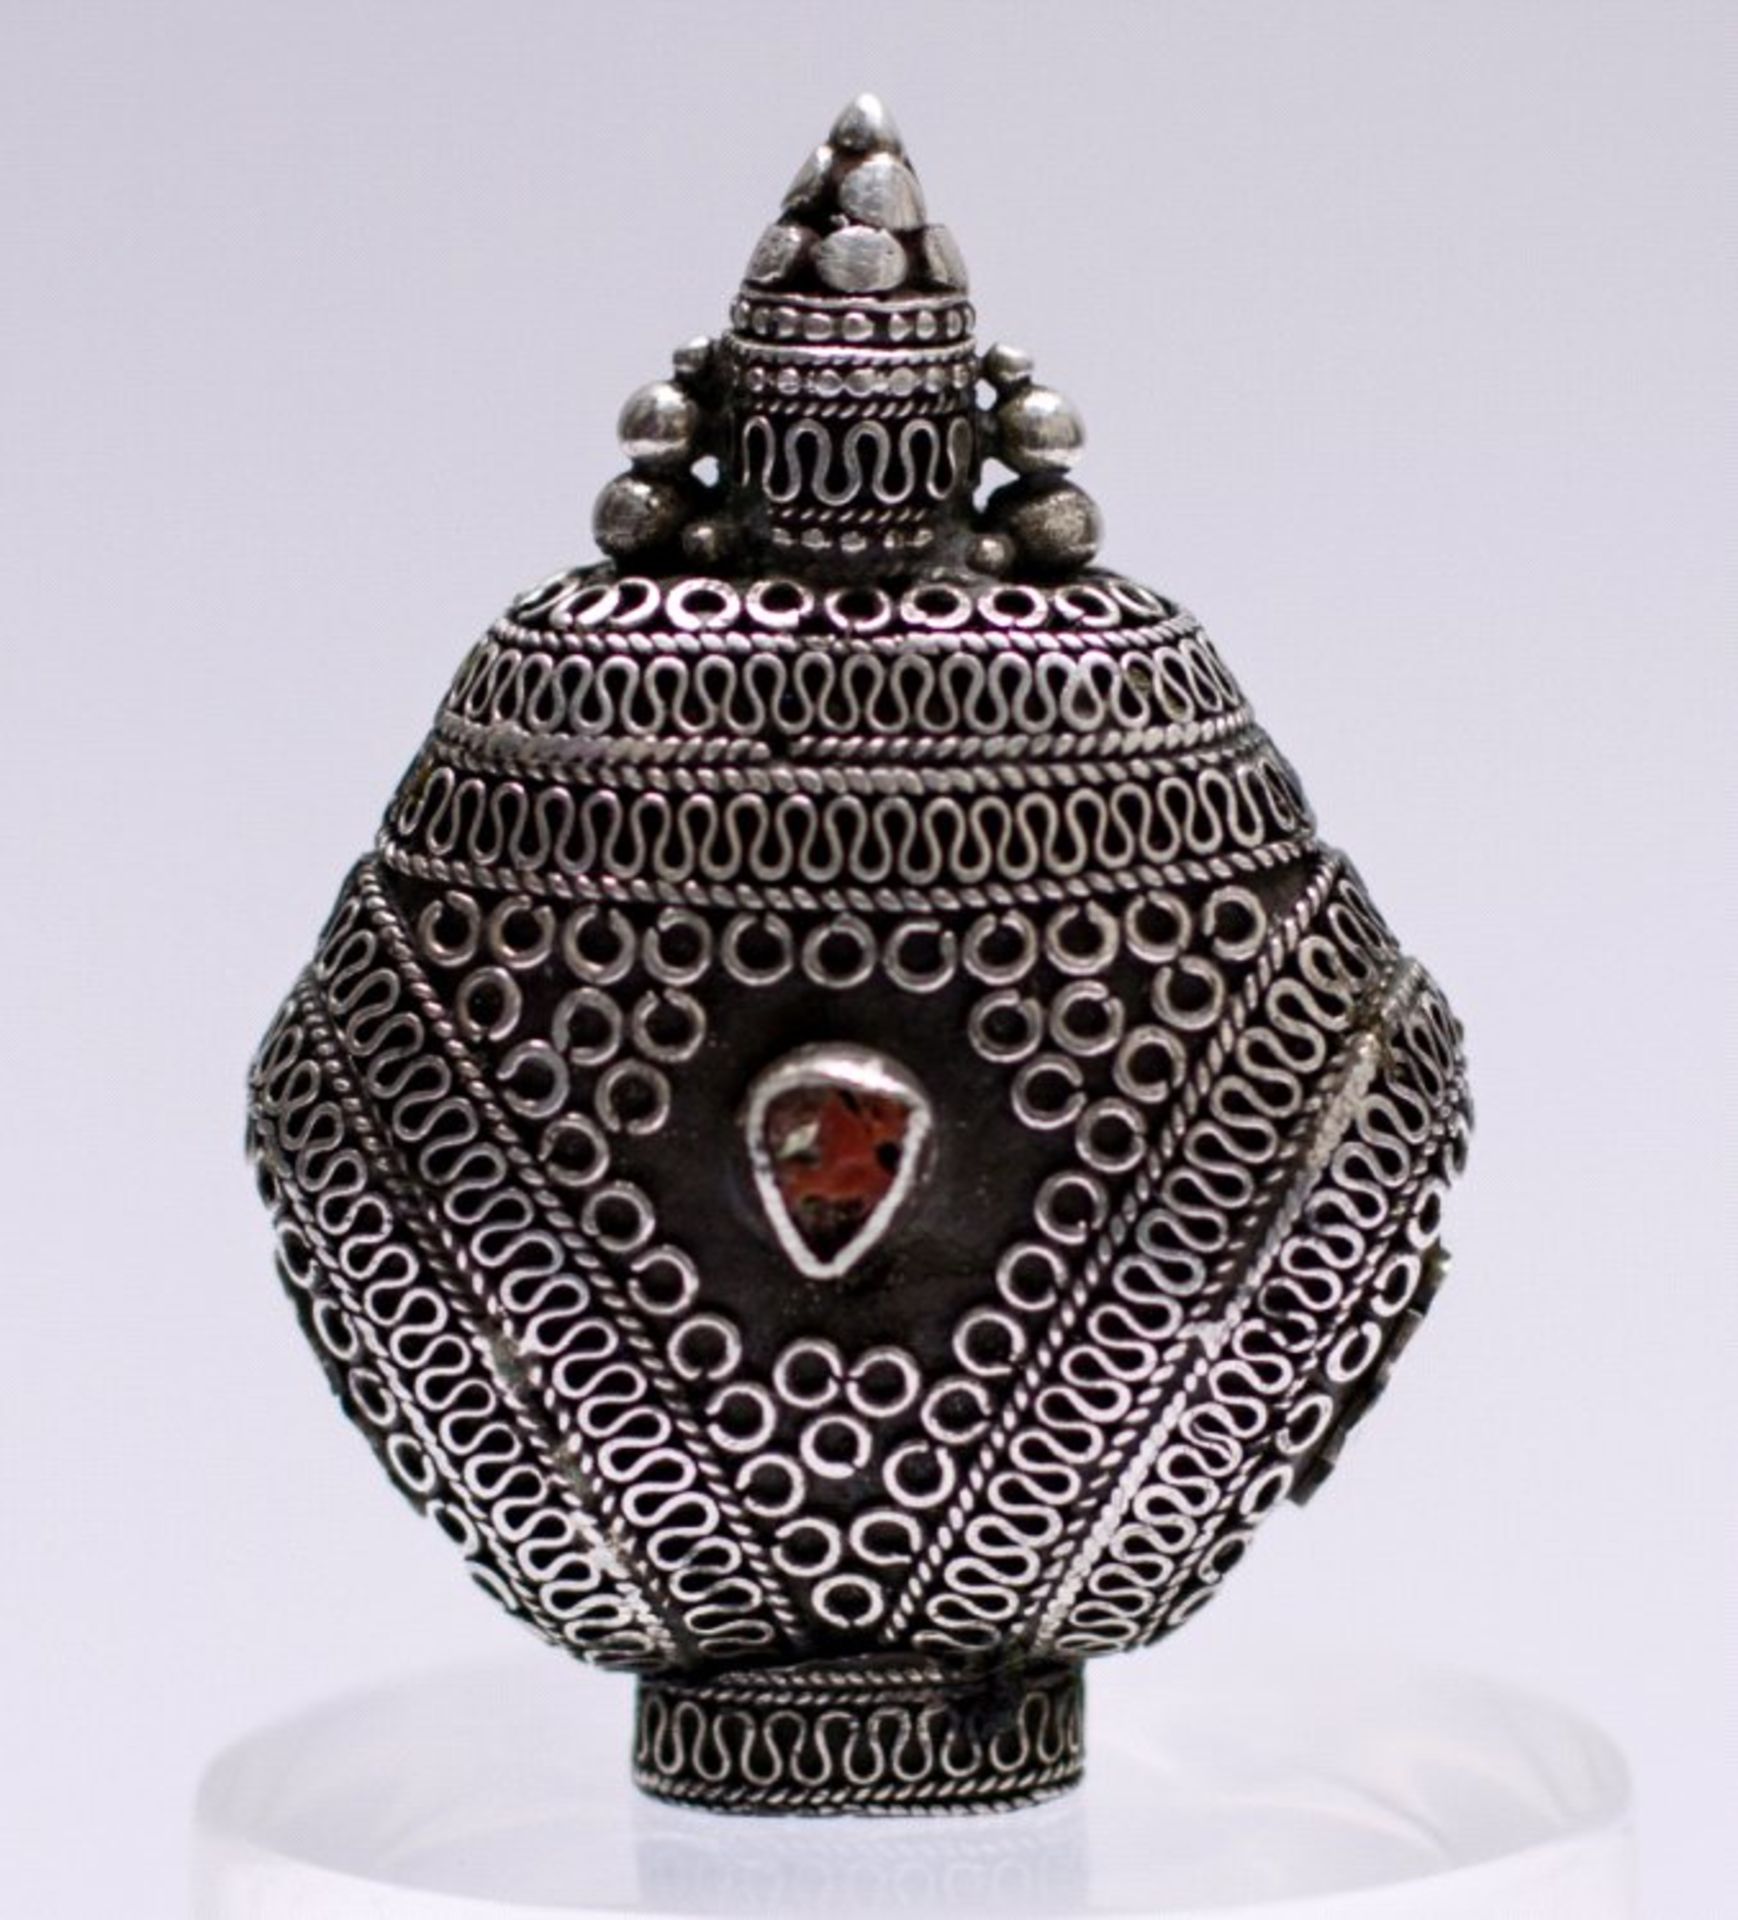 Snuff-Bottle, Mongolai um 1900aus Silber, filigran gefertigt, besetzt mit roter Koralle,drehbare